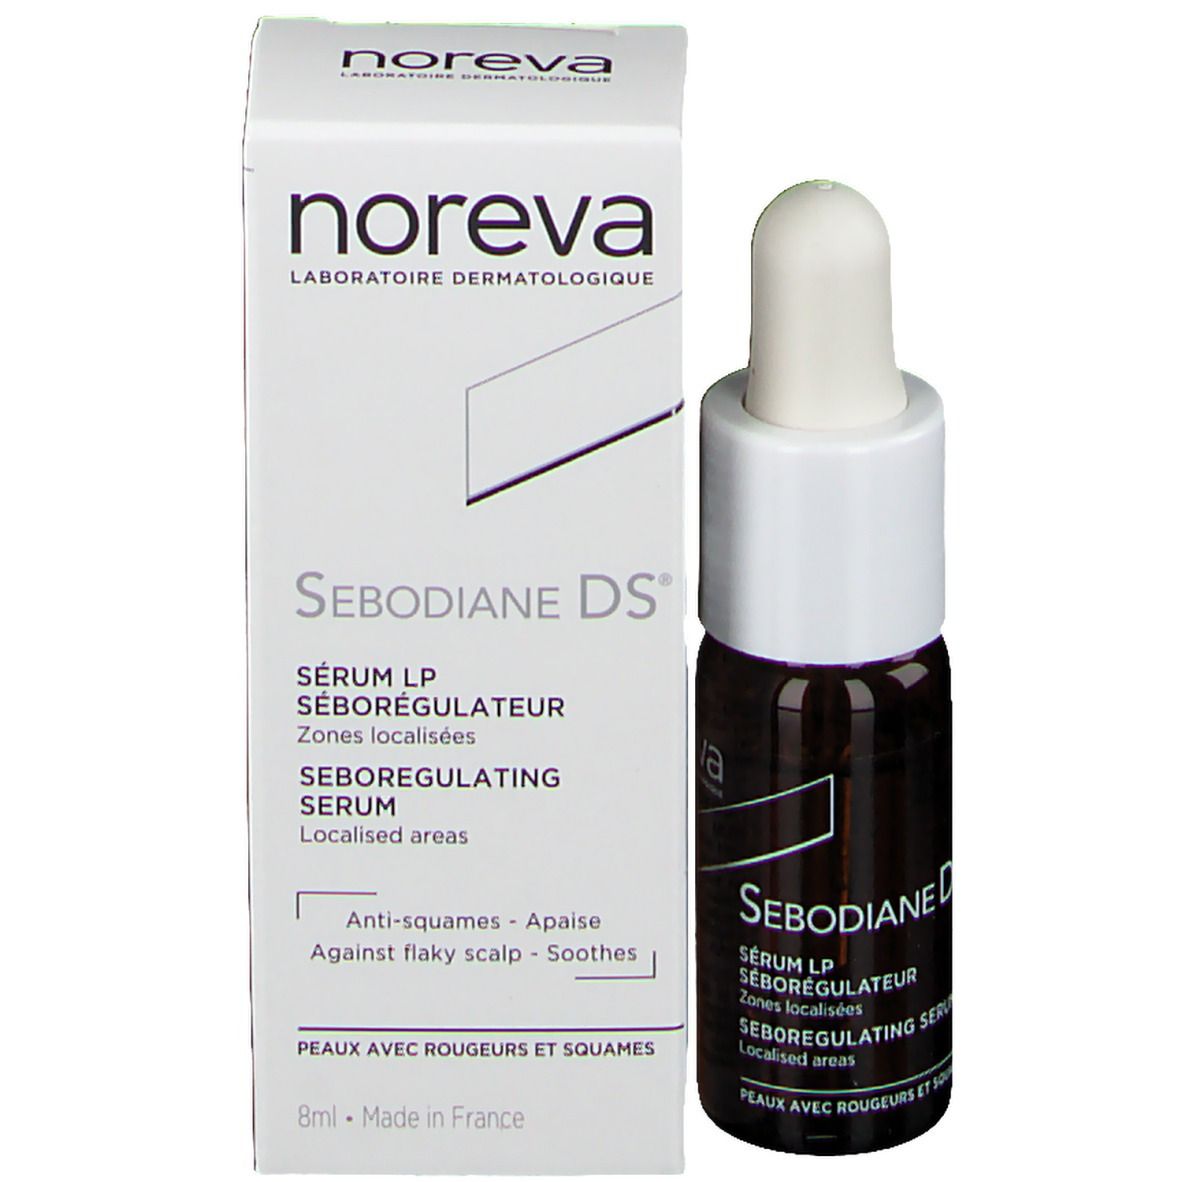 noreva Sebodiane DS® Serum LP